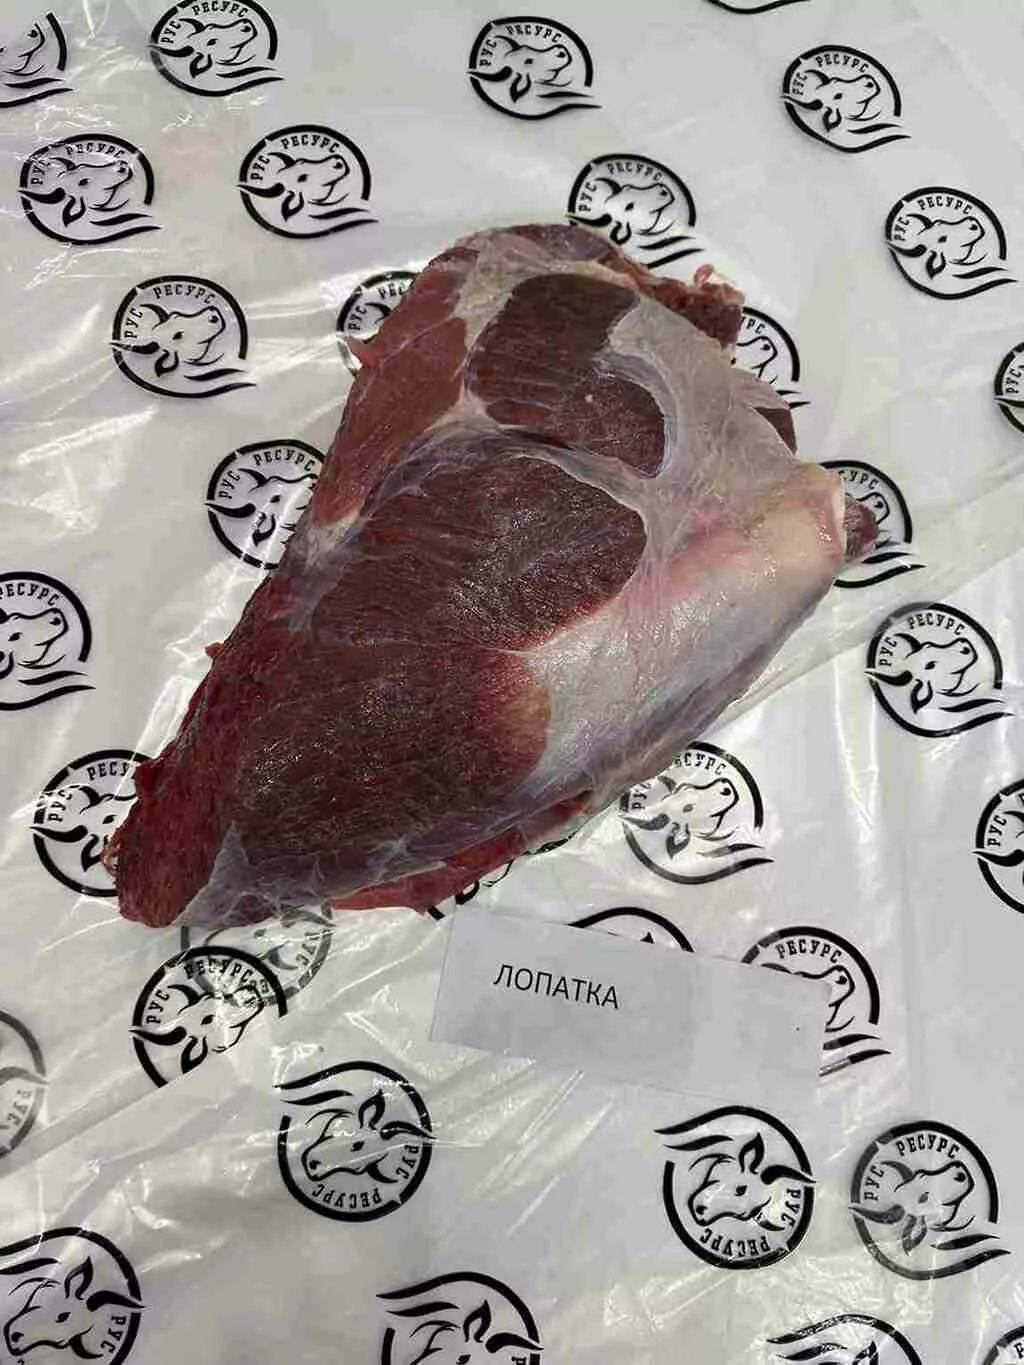 фотография продукта Отруба говядина ГОСТ